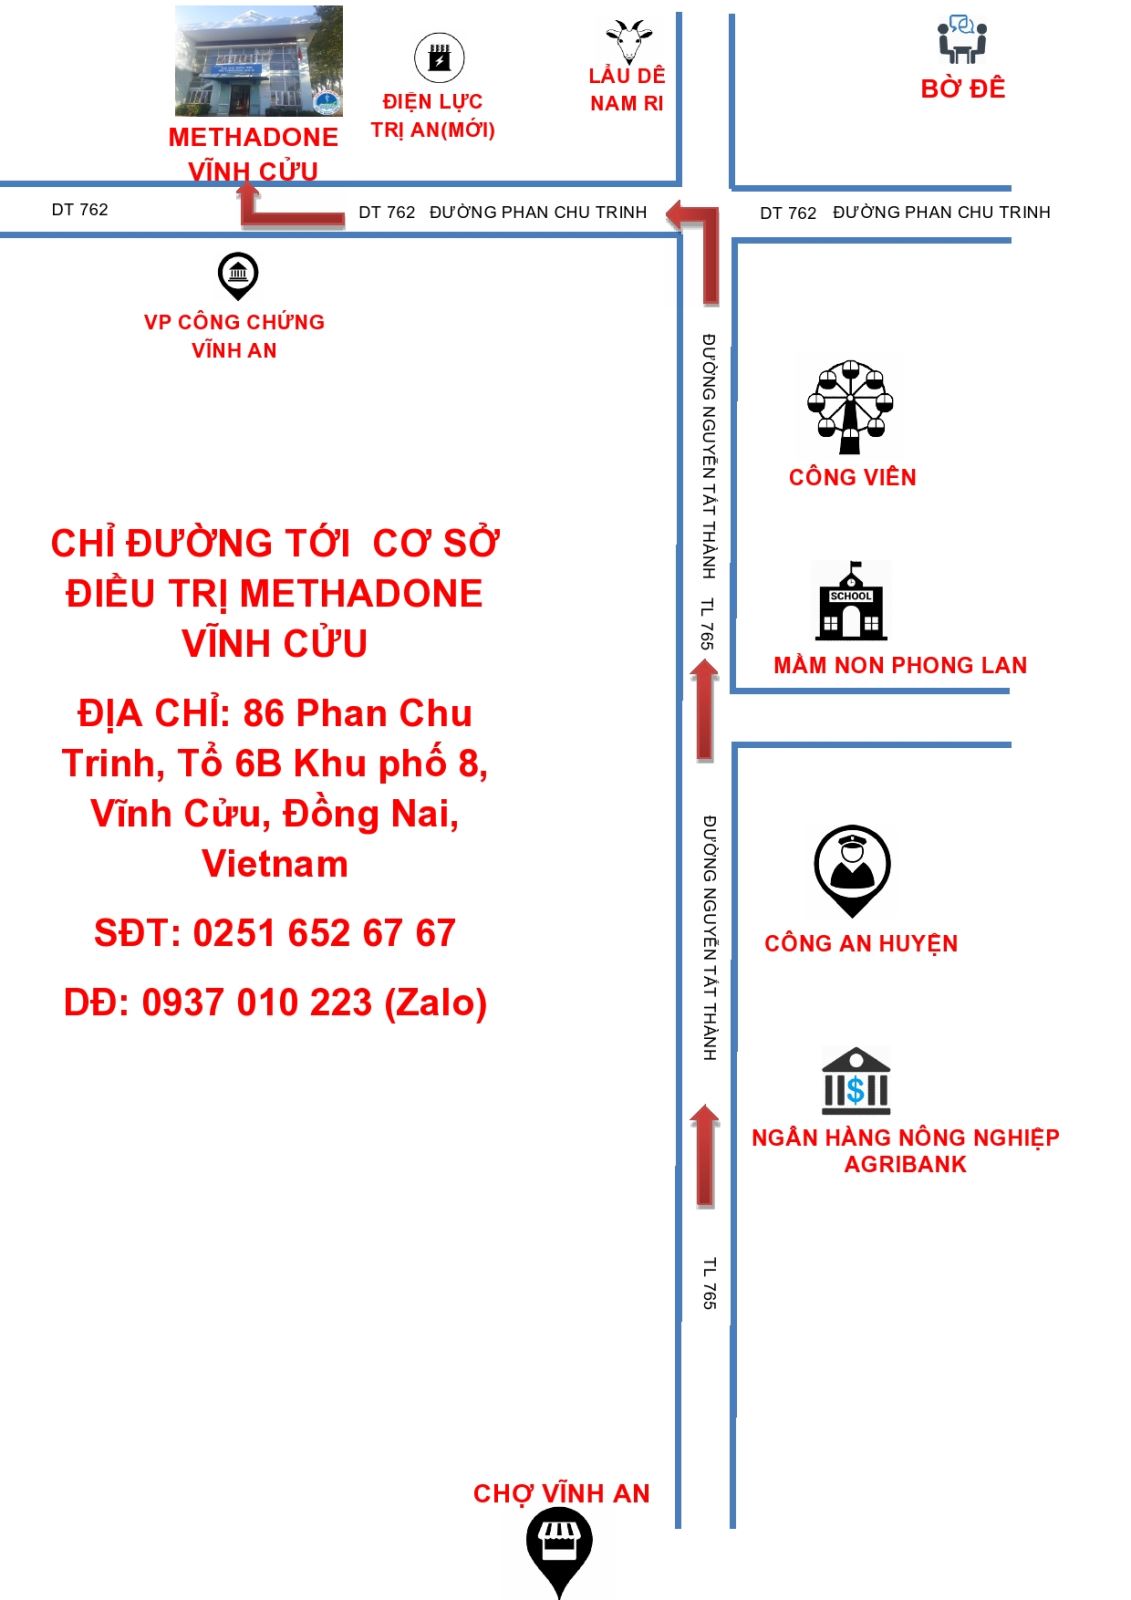 Chỉ đường tới cơ sở Methadone số 8 - Cơ sở Methadone Vĩnh Cửu